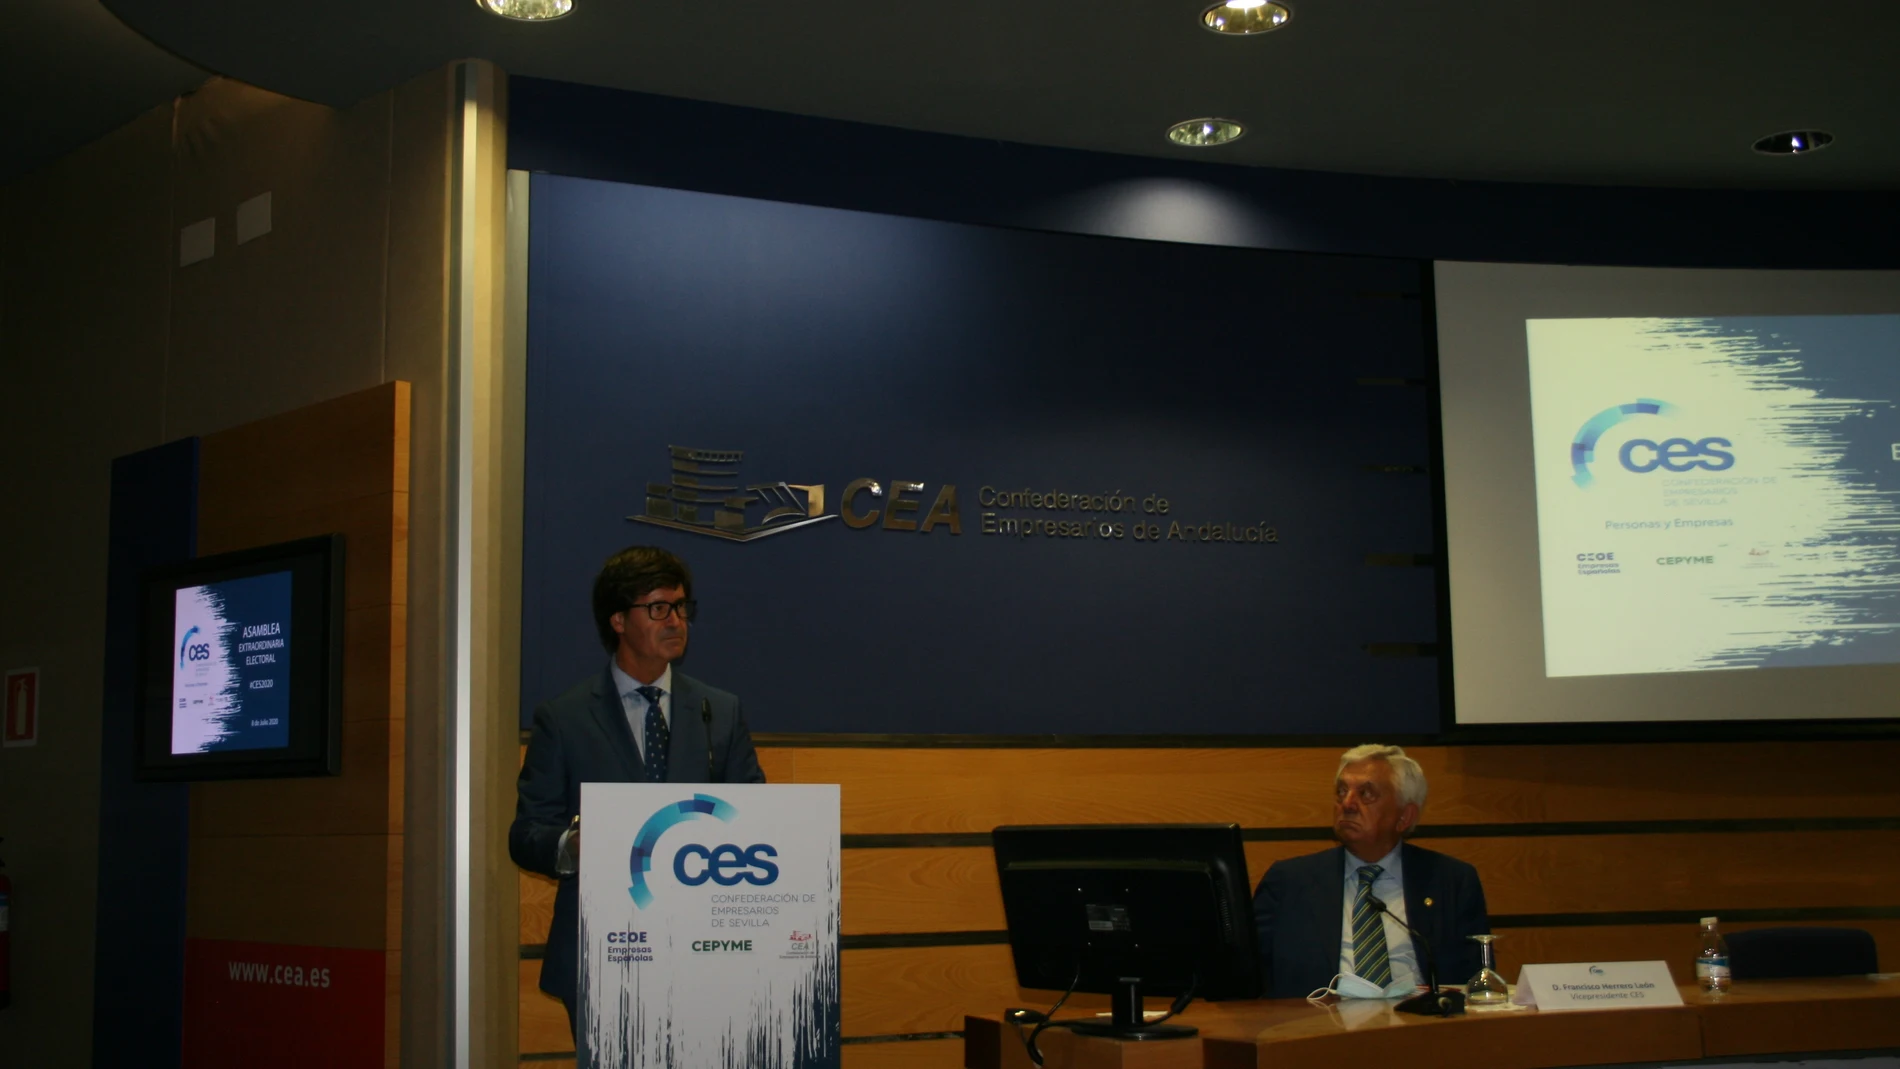 Sevilla.-Miguel Rus, reelegido presidente de la CES, apuesta por "no revertir" reformas que generan crecimiento